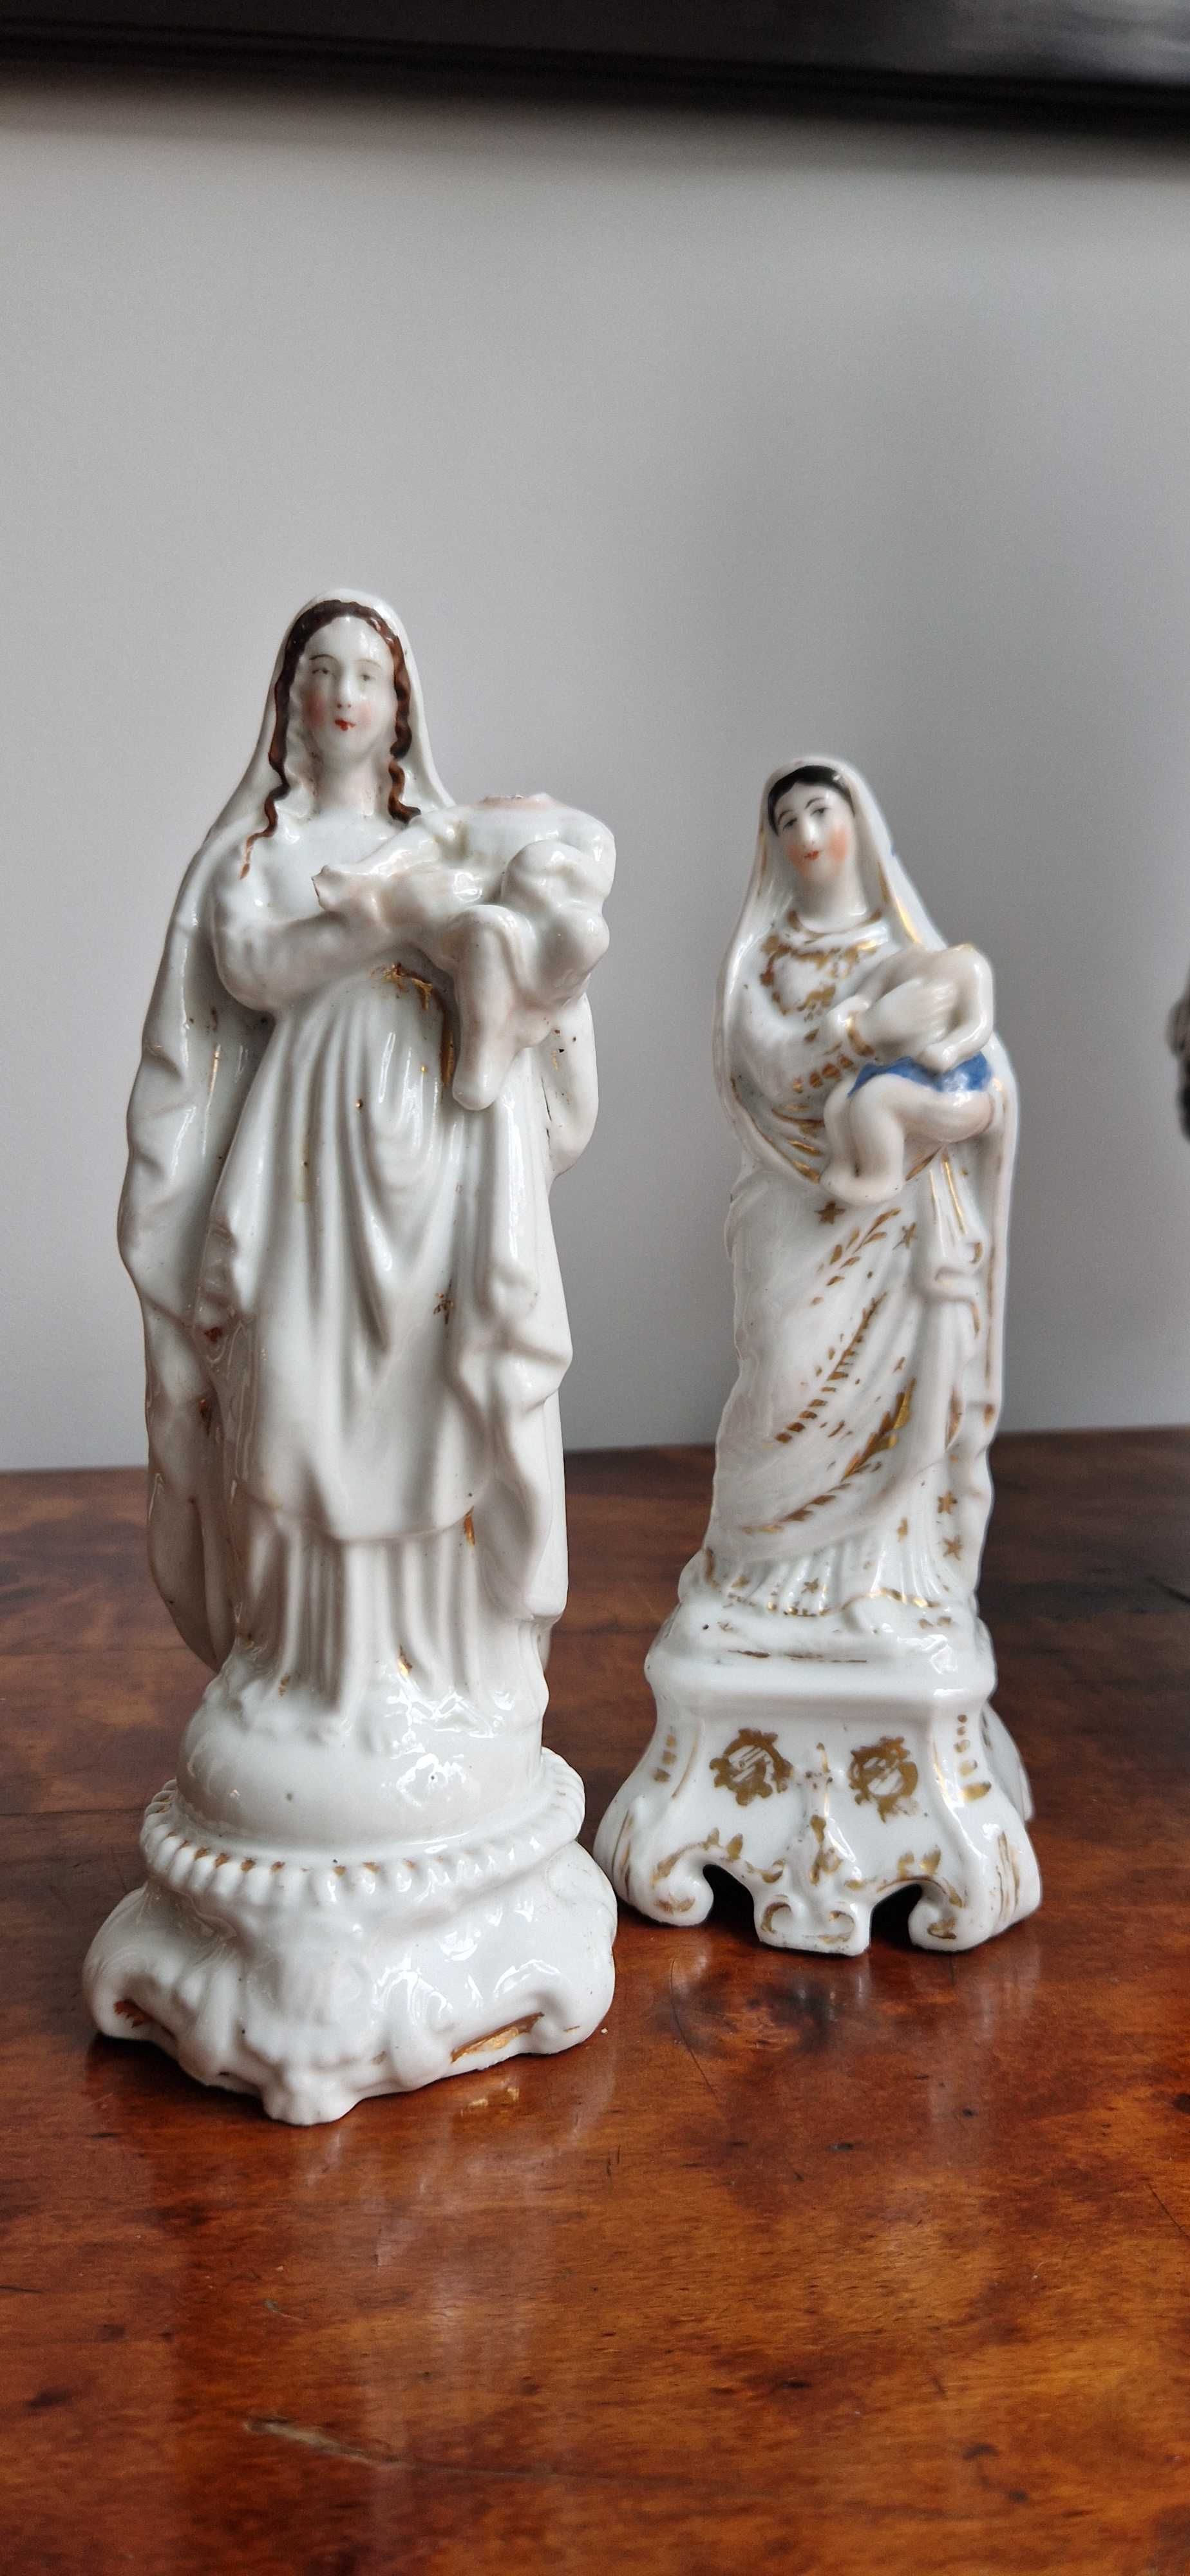 Figurki rzezby swietych dewocjonalia sztuka sakralna porcelana dekor